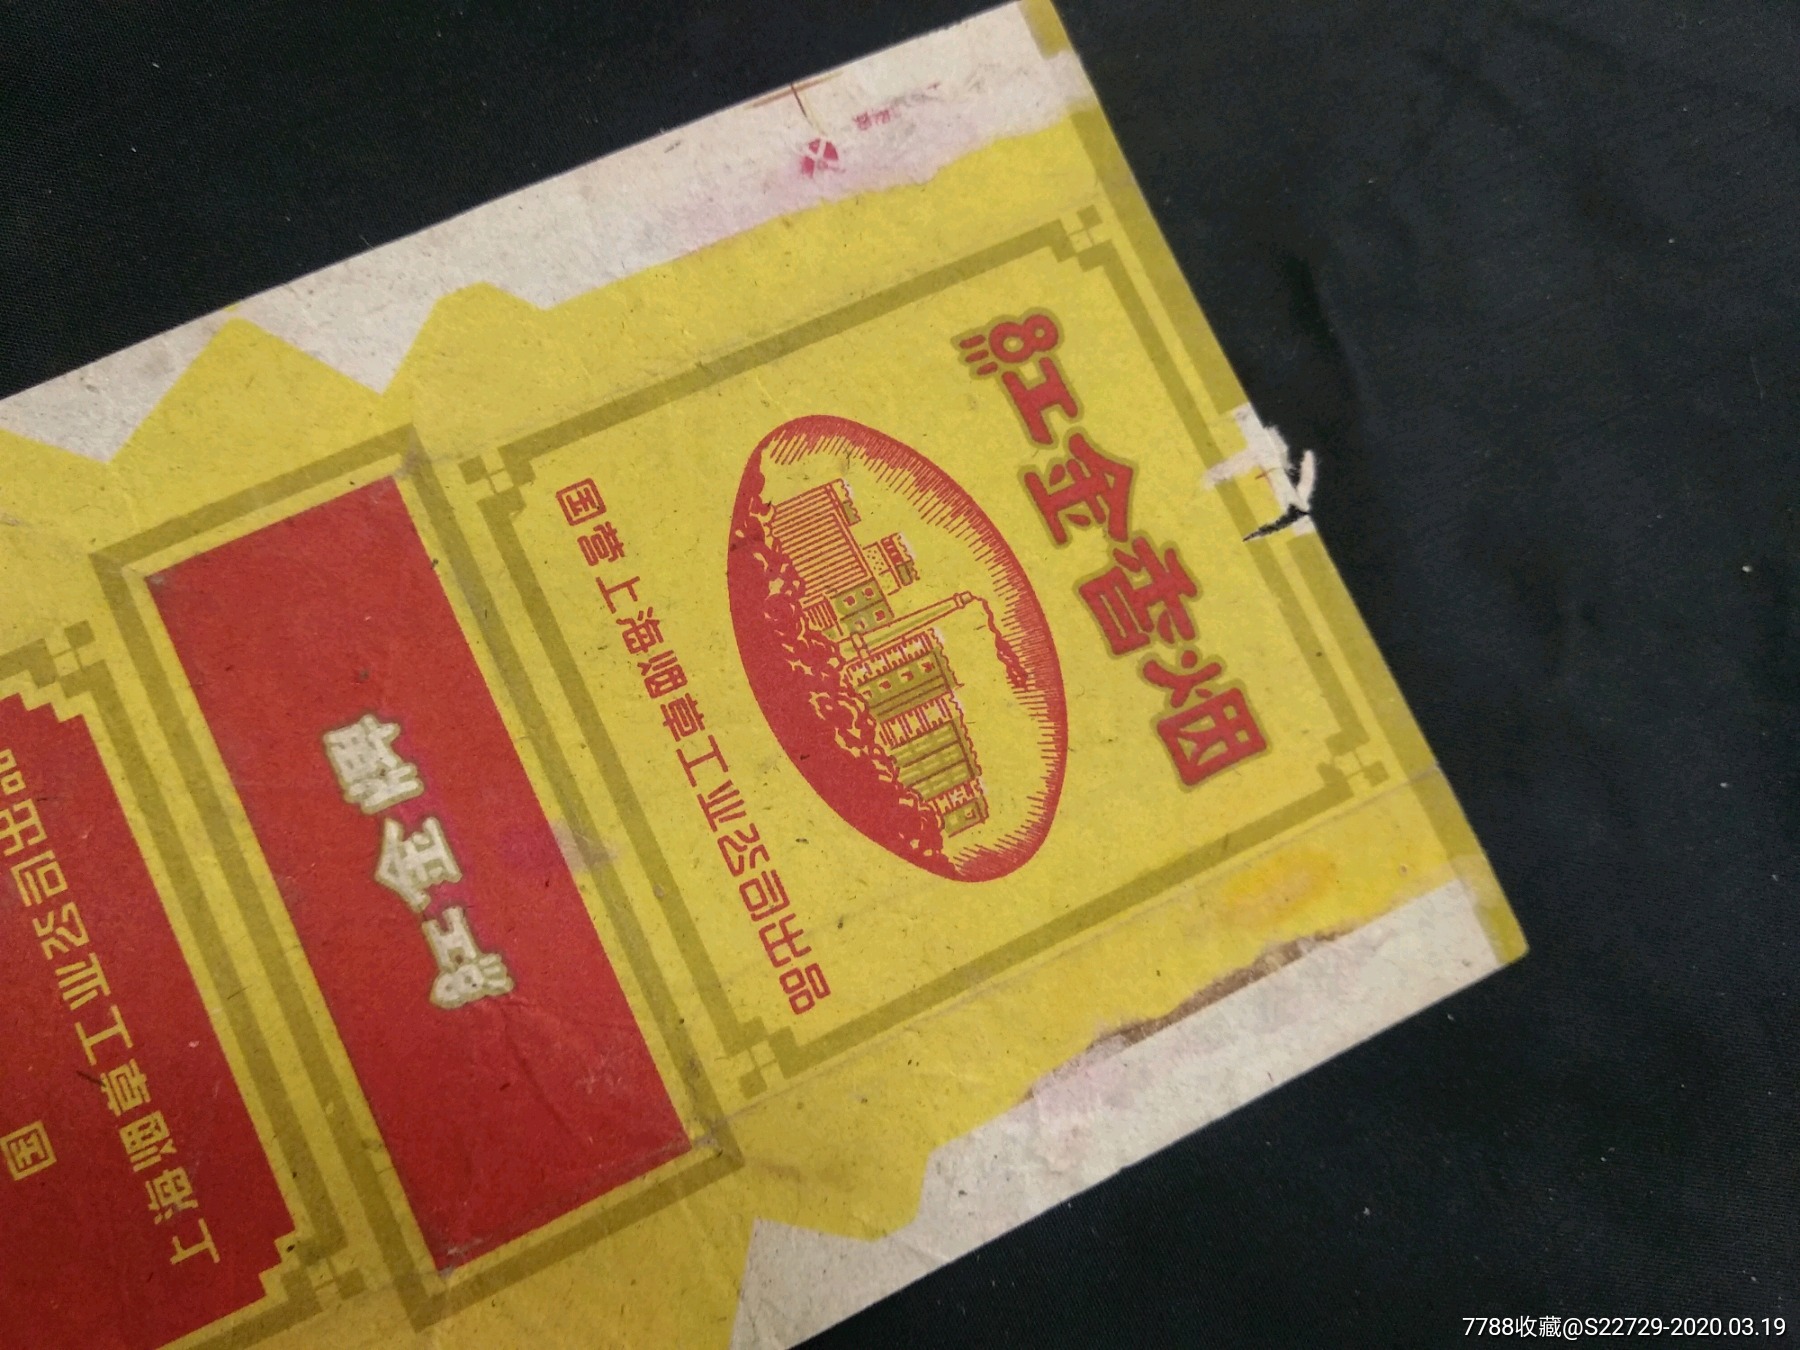 50年代国营上海烟草工业公司出品烟标:红金牌香烟